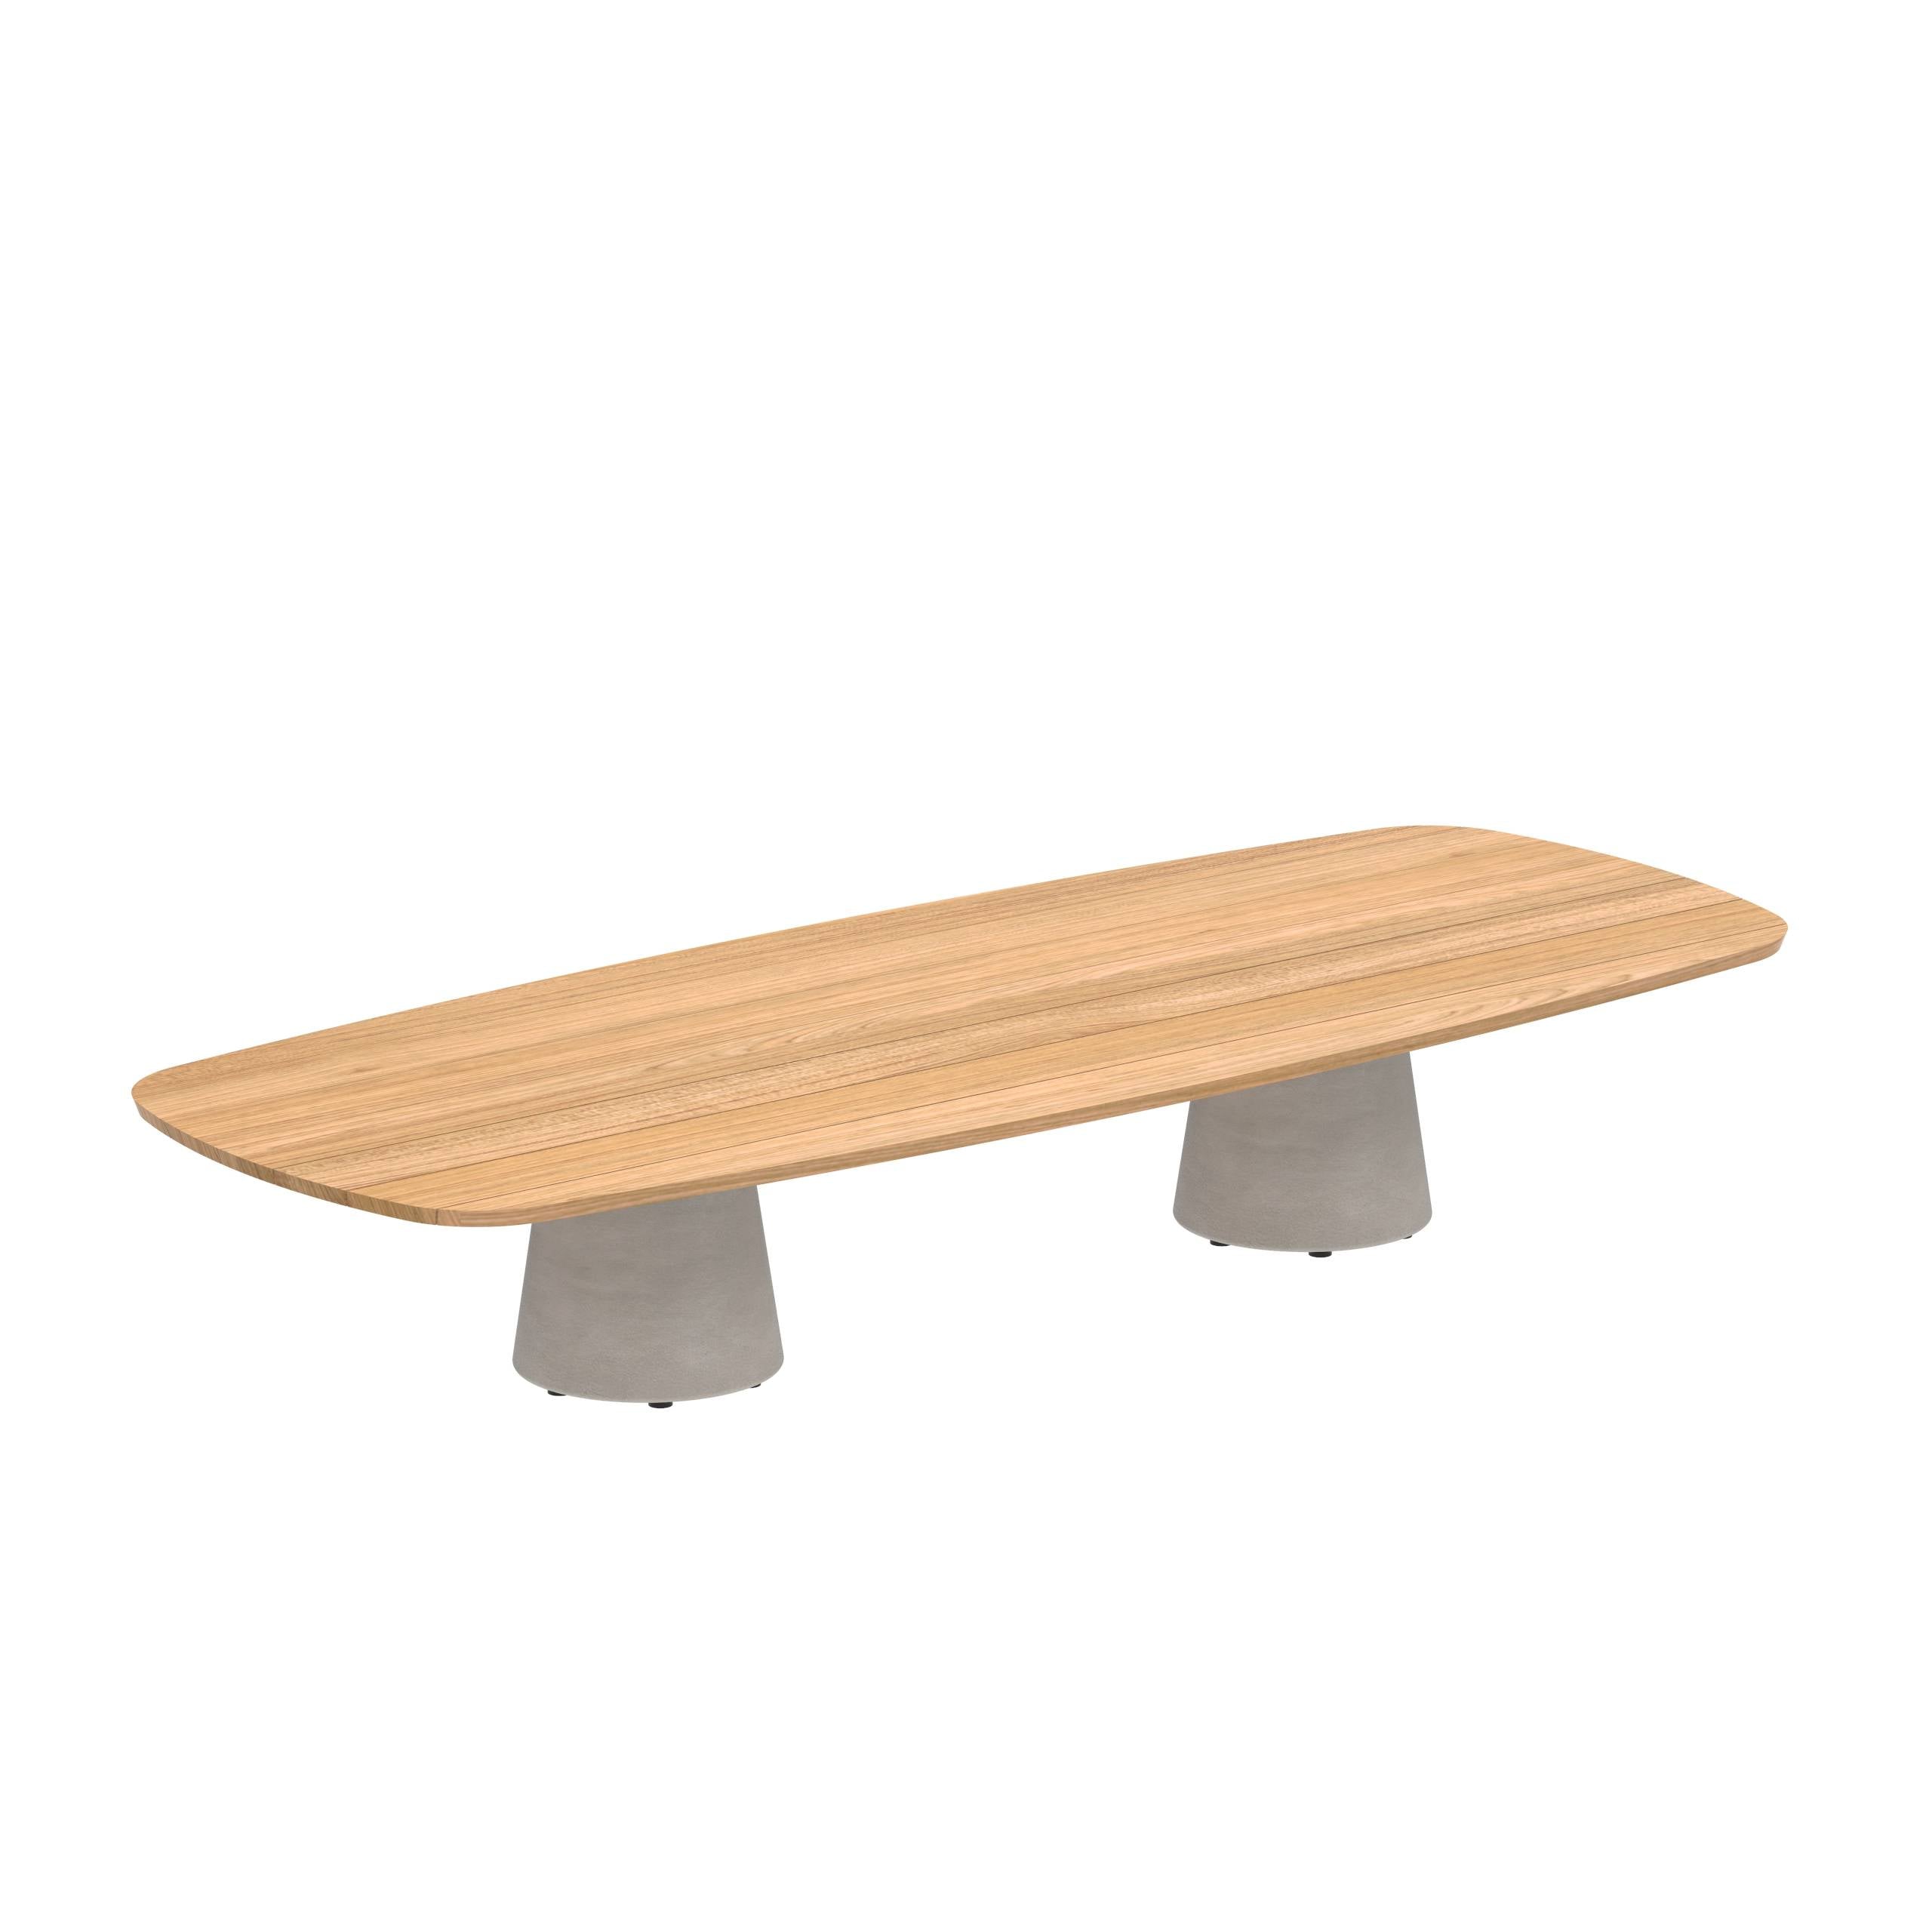 Conix Table 300x120 Cm High Lounge Legs Concrete Cement Grey - Table Top Teak